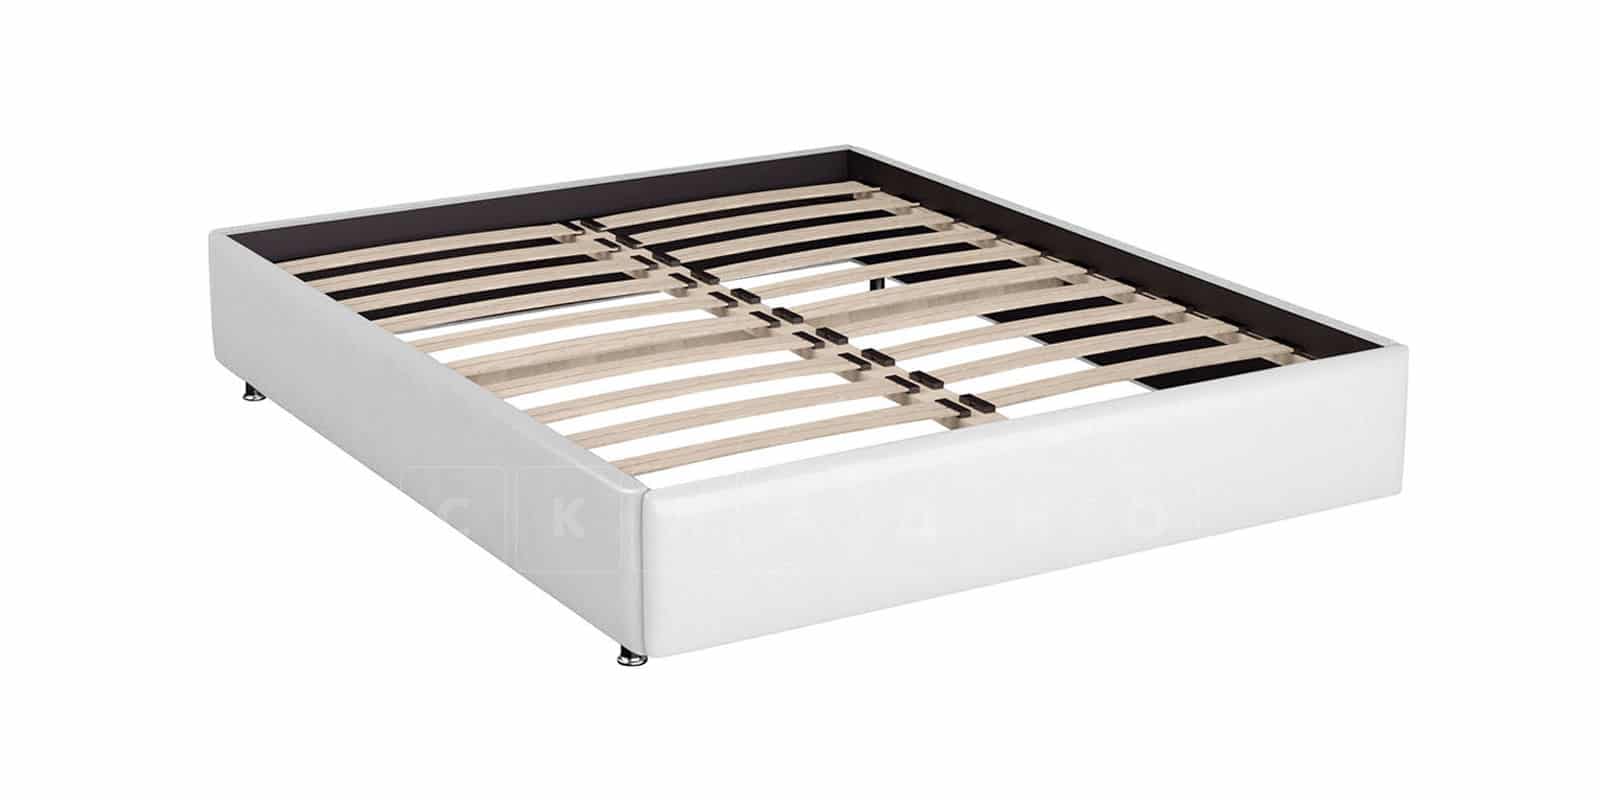 Мягкая кровать Малибу 160 см экокожа белого цвета вариант 1-2 фото 6 | интернет-магазин Складно